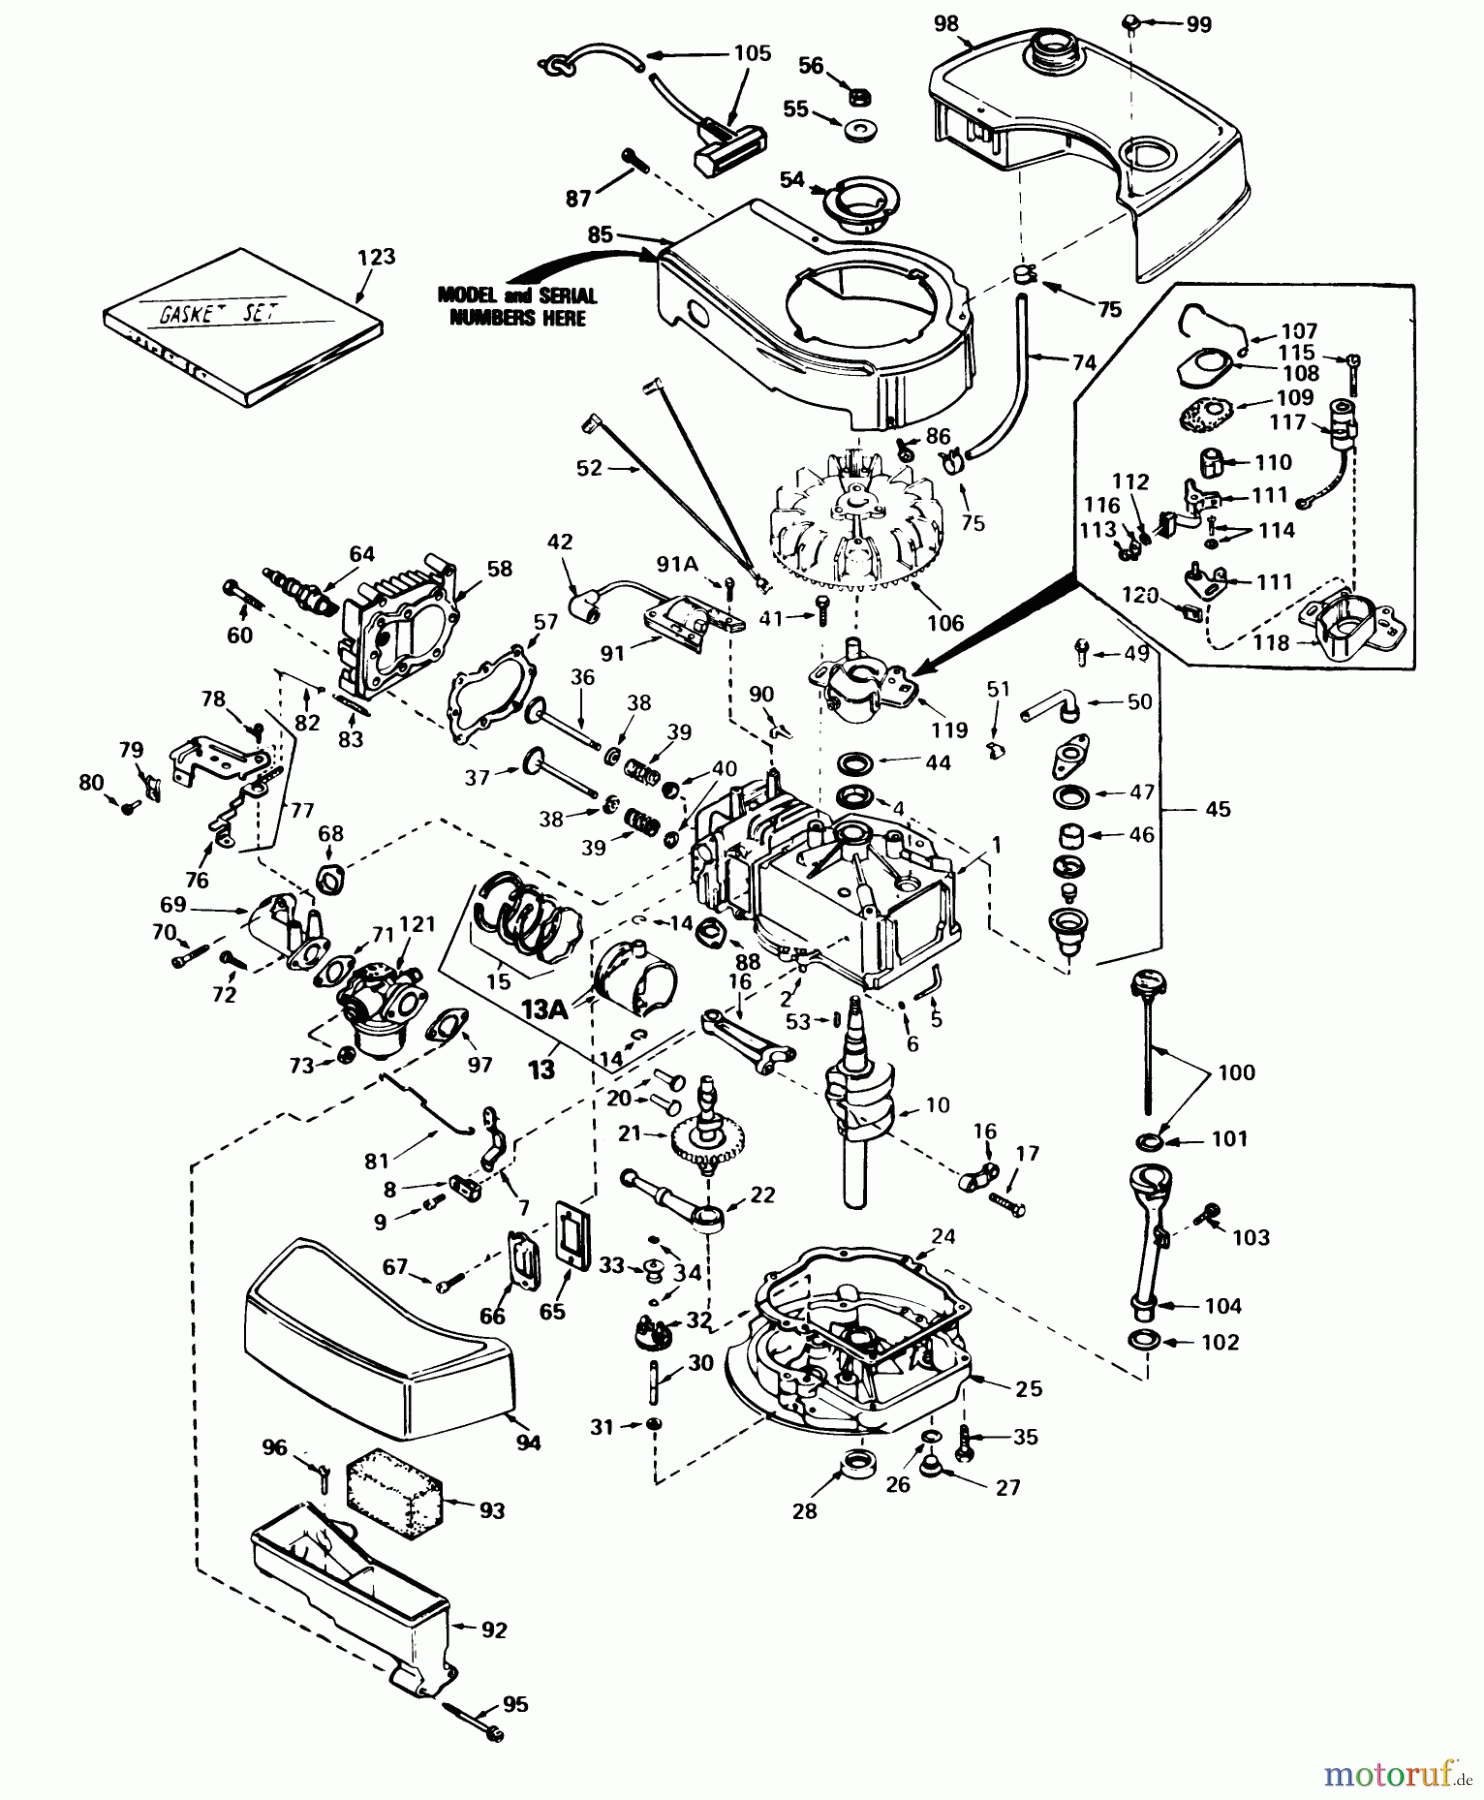  Toro Neu Mowers, Walk-Behind Seite 2 21738 - Toro Whirlwind Lawnmower, 1981 (1000001-1999999) ENGINE TECUMSEH MODEL NO. TNT 100-10056D